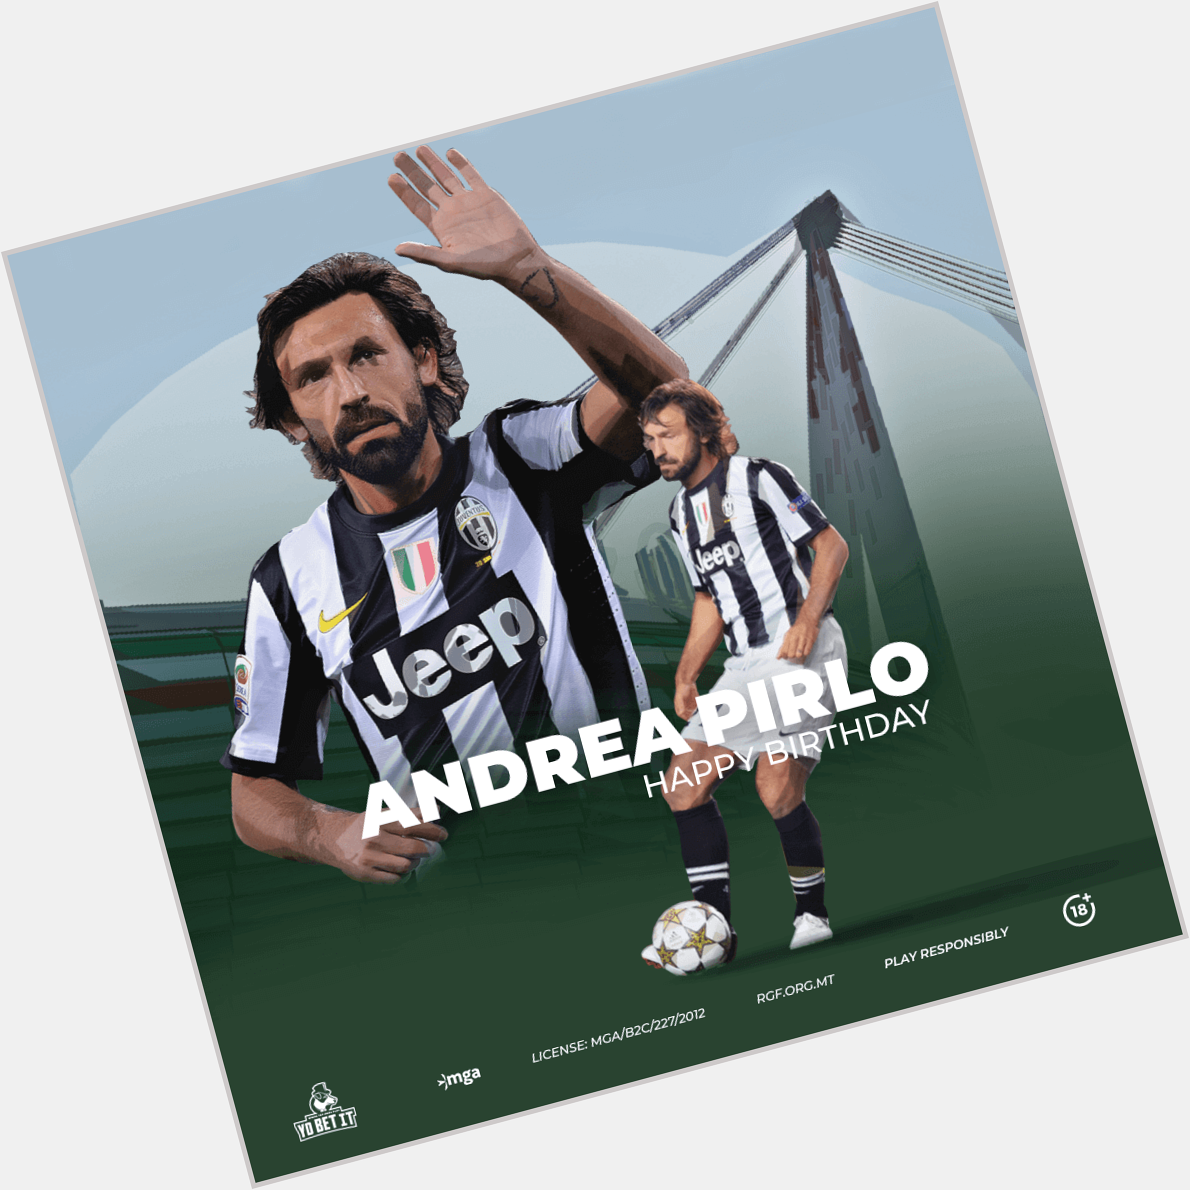  Happy Birthday to the Midfield Andrea Pirlo    